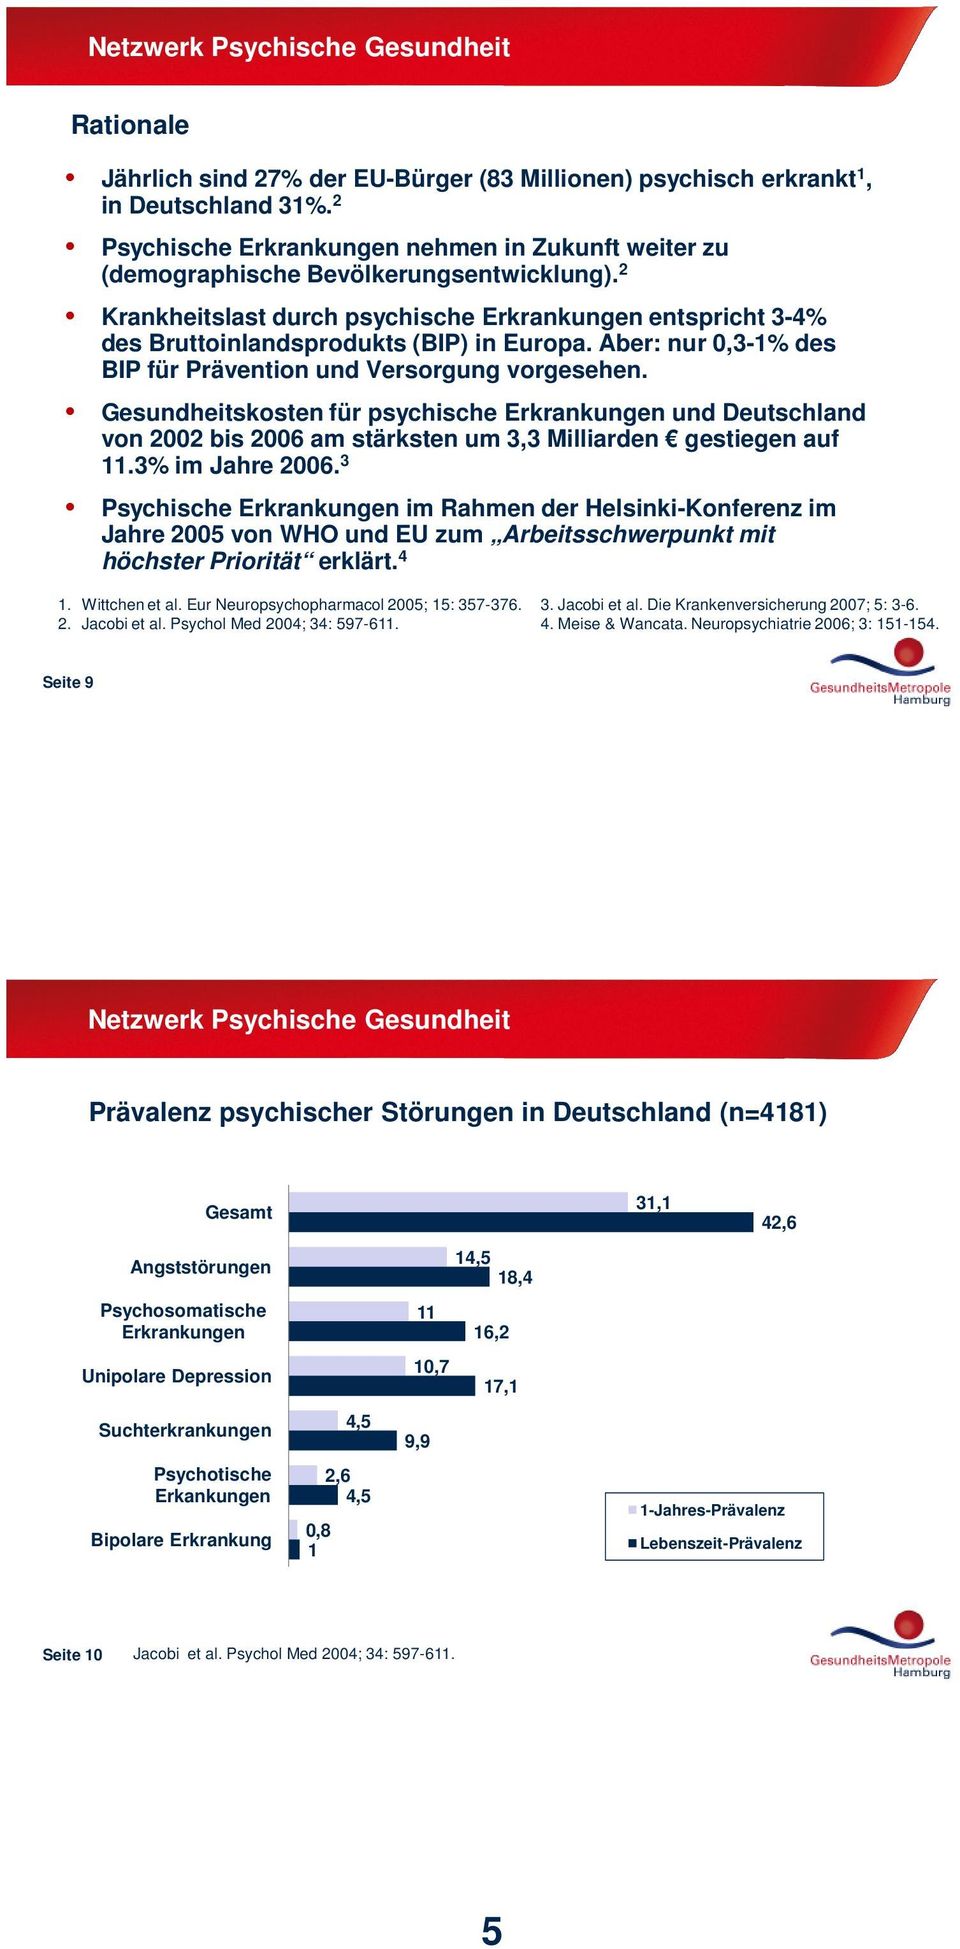 Gesundheitskosten für psychische Erkrankungen und Deutschland von 2002 bis 2006 am stärksten um 3,3 Milliarden gestiegen auf 11.3% im Jahre 2006.